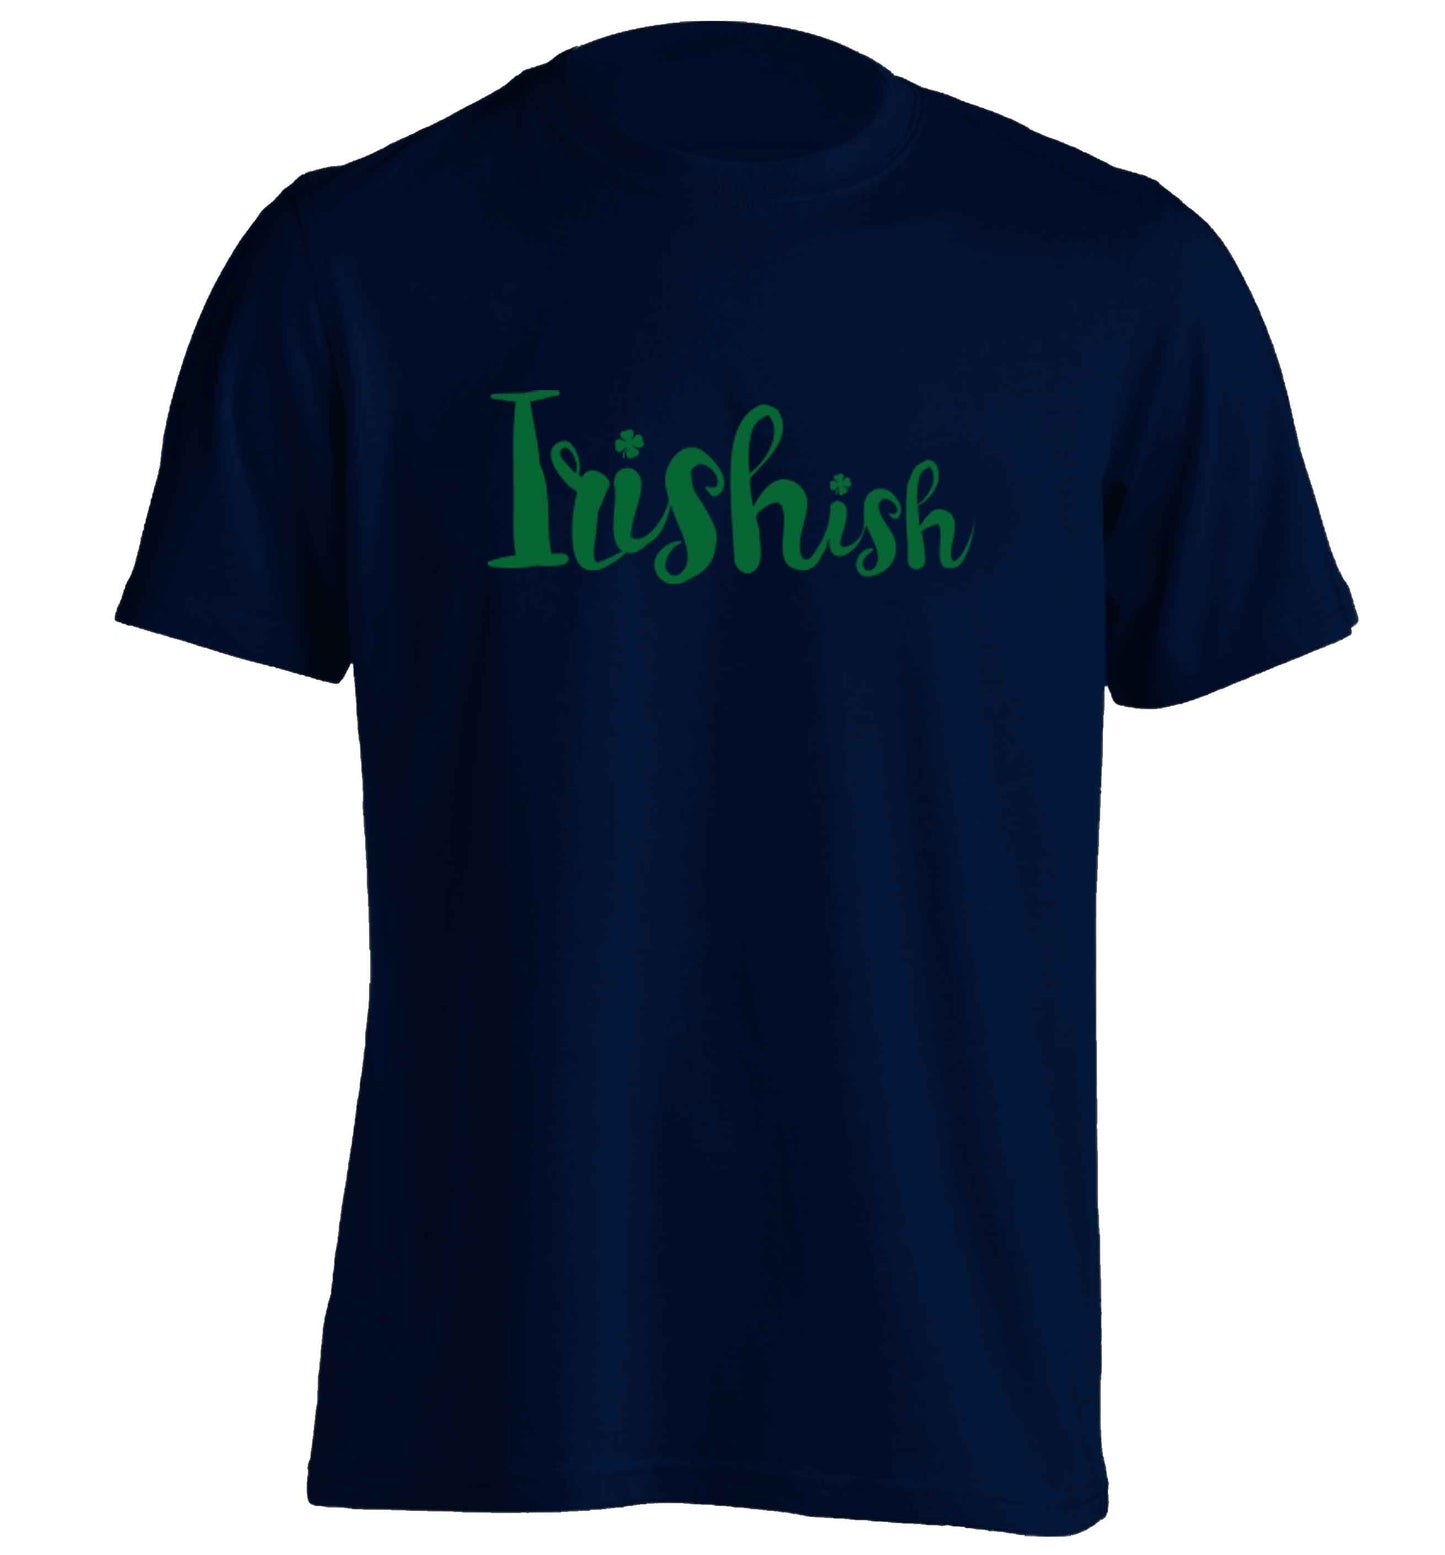 Irishish adults unisex navy Tshirt 2XL